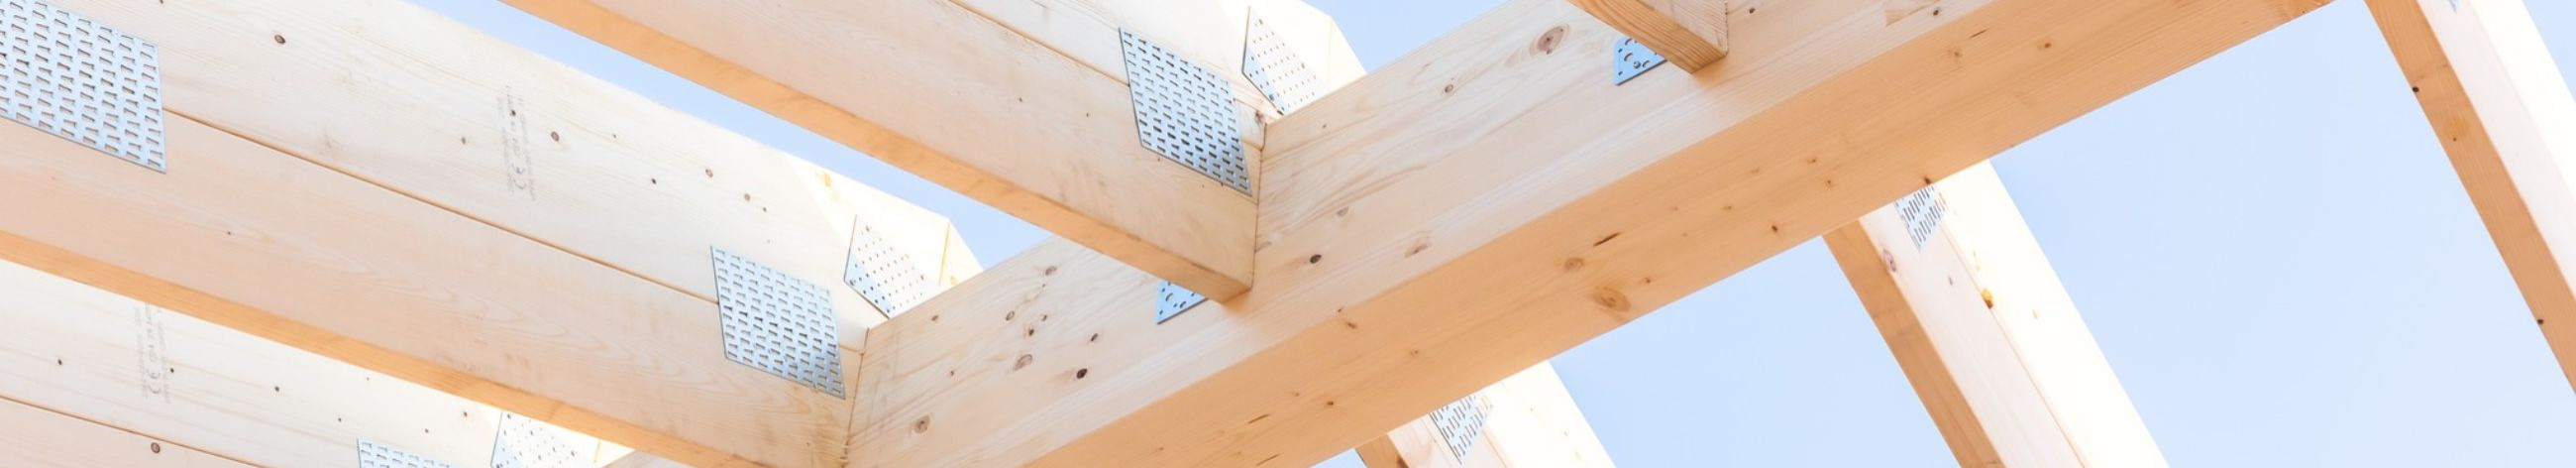 Tenter OÜ on Baltikumi suurim katusefermide ning Posi-Joisti talade tootja. Kvaliteetsed puitkonstruktsioonid ja ehtsast puidust kestvad lahendused kujundavad väärtusliku ja jätkusuutliku elukeskkonna.